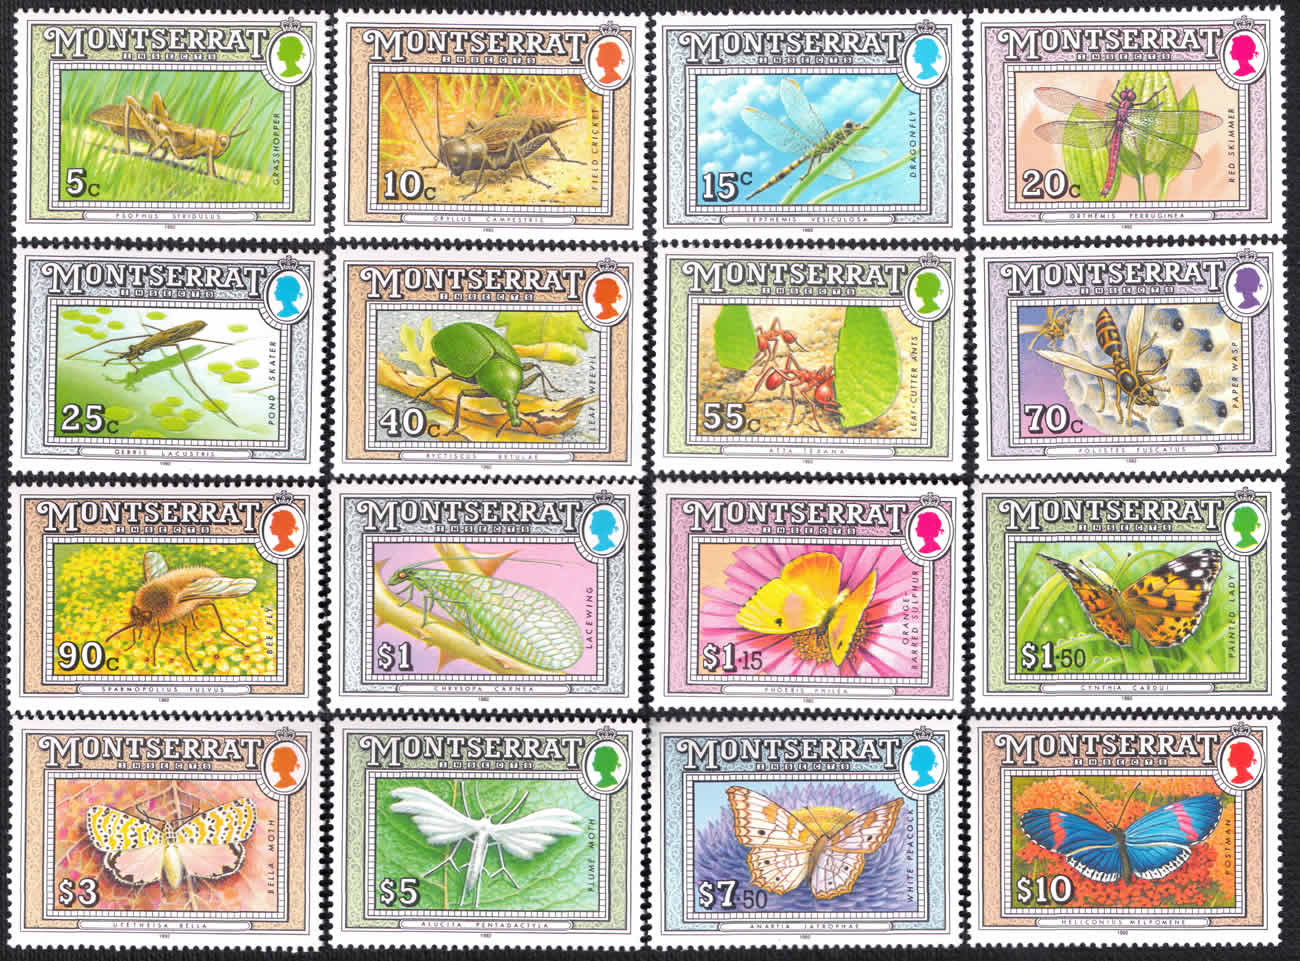 Serie 16 sellos de insectos, Montserrat 1992